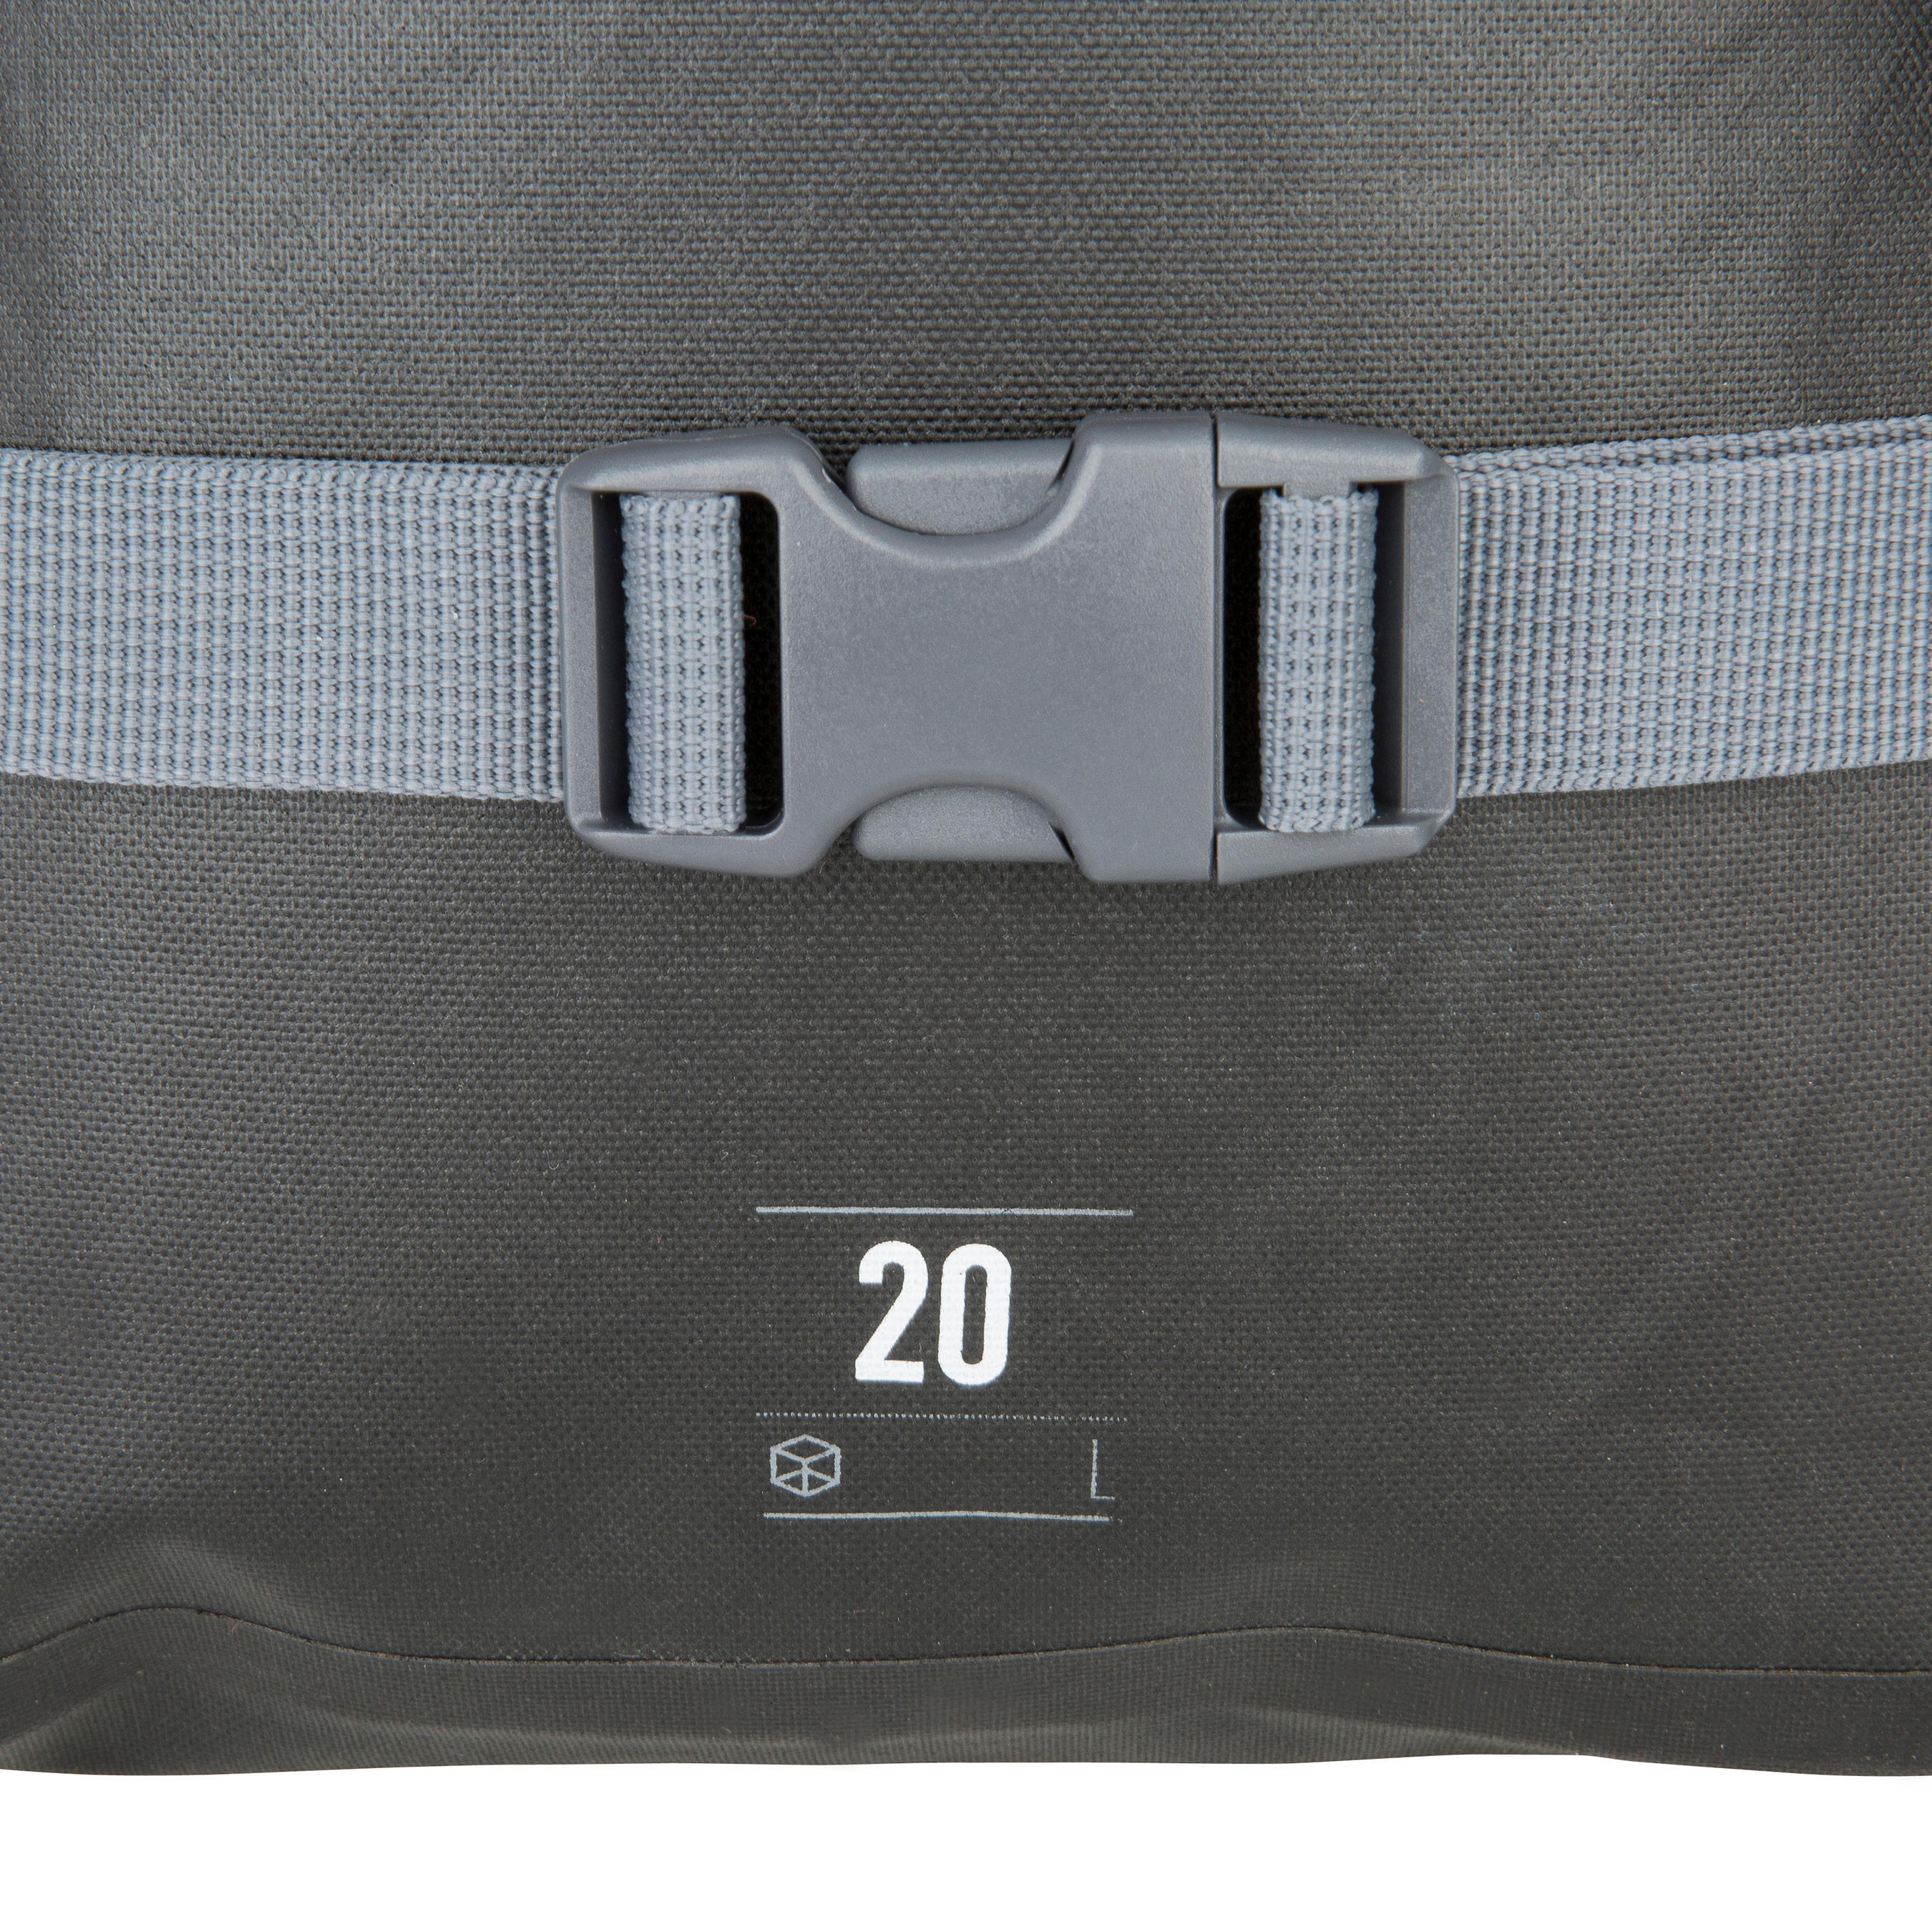 Waterproof Backpack 20L - Black 14/17